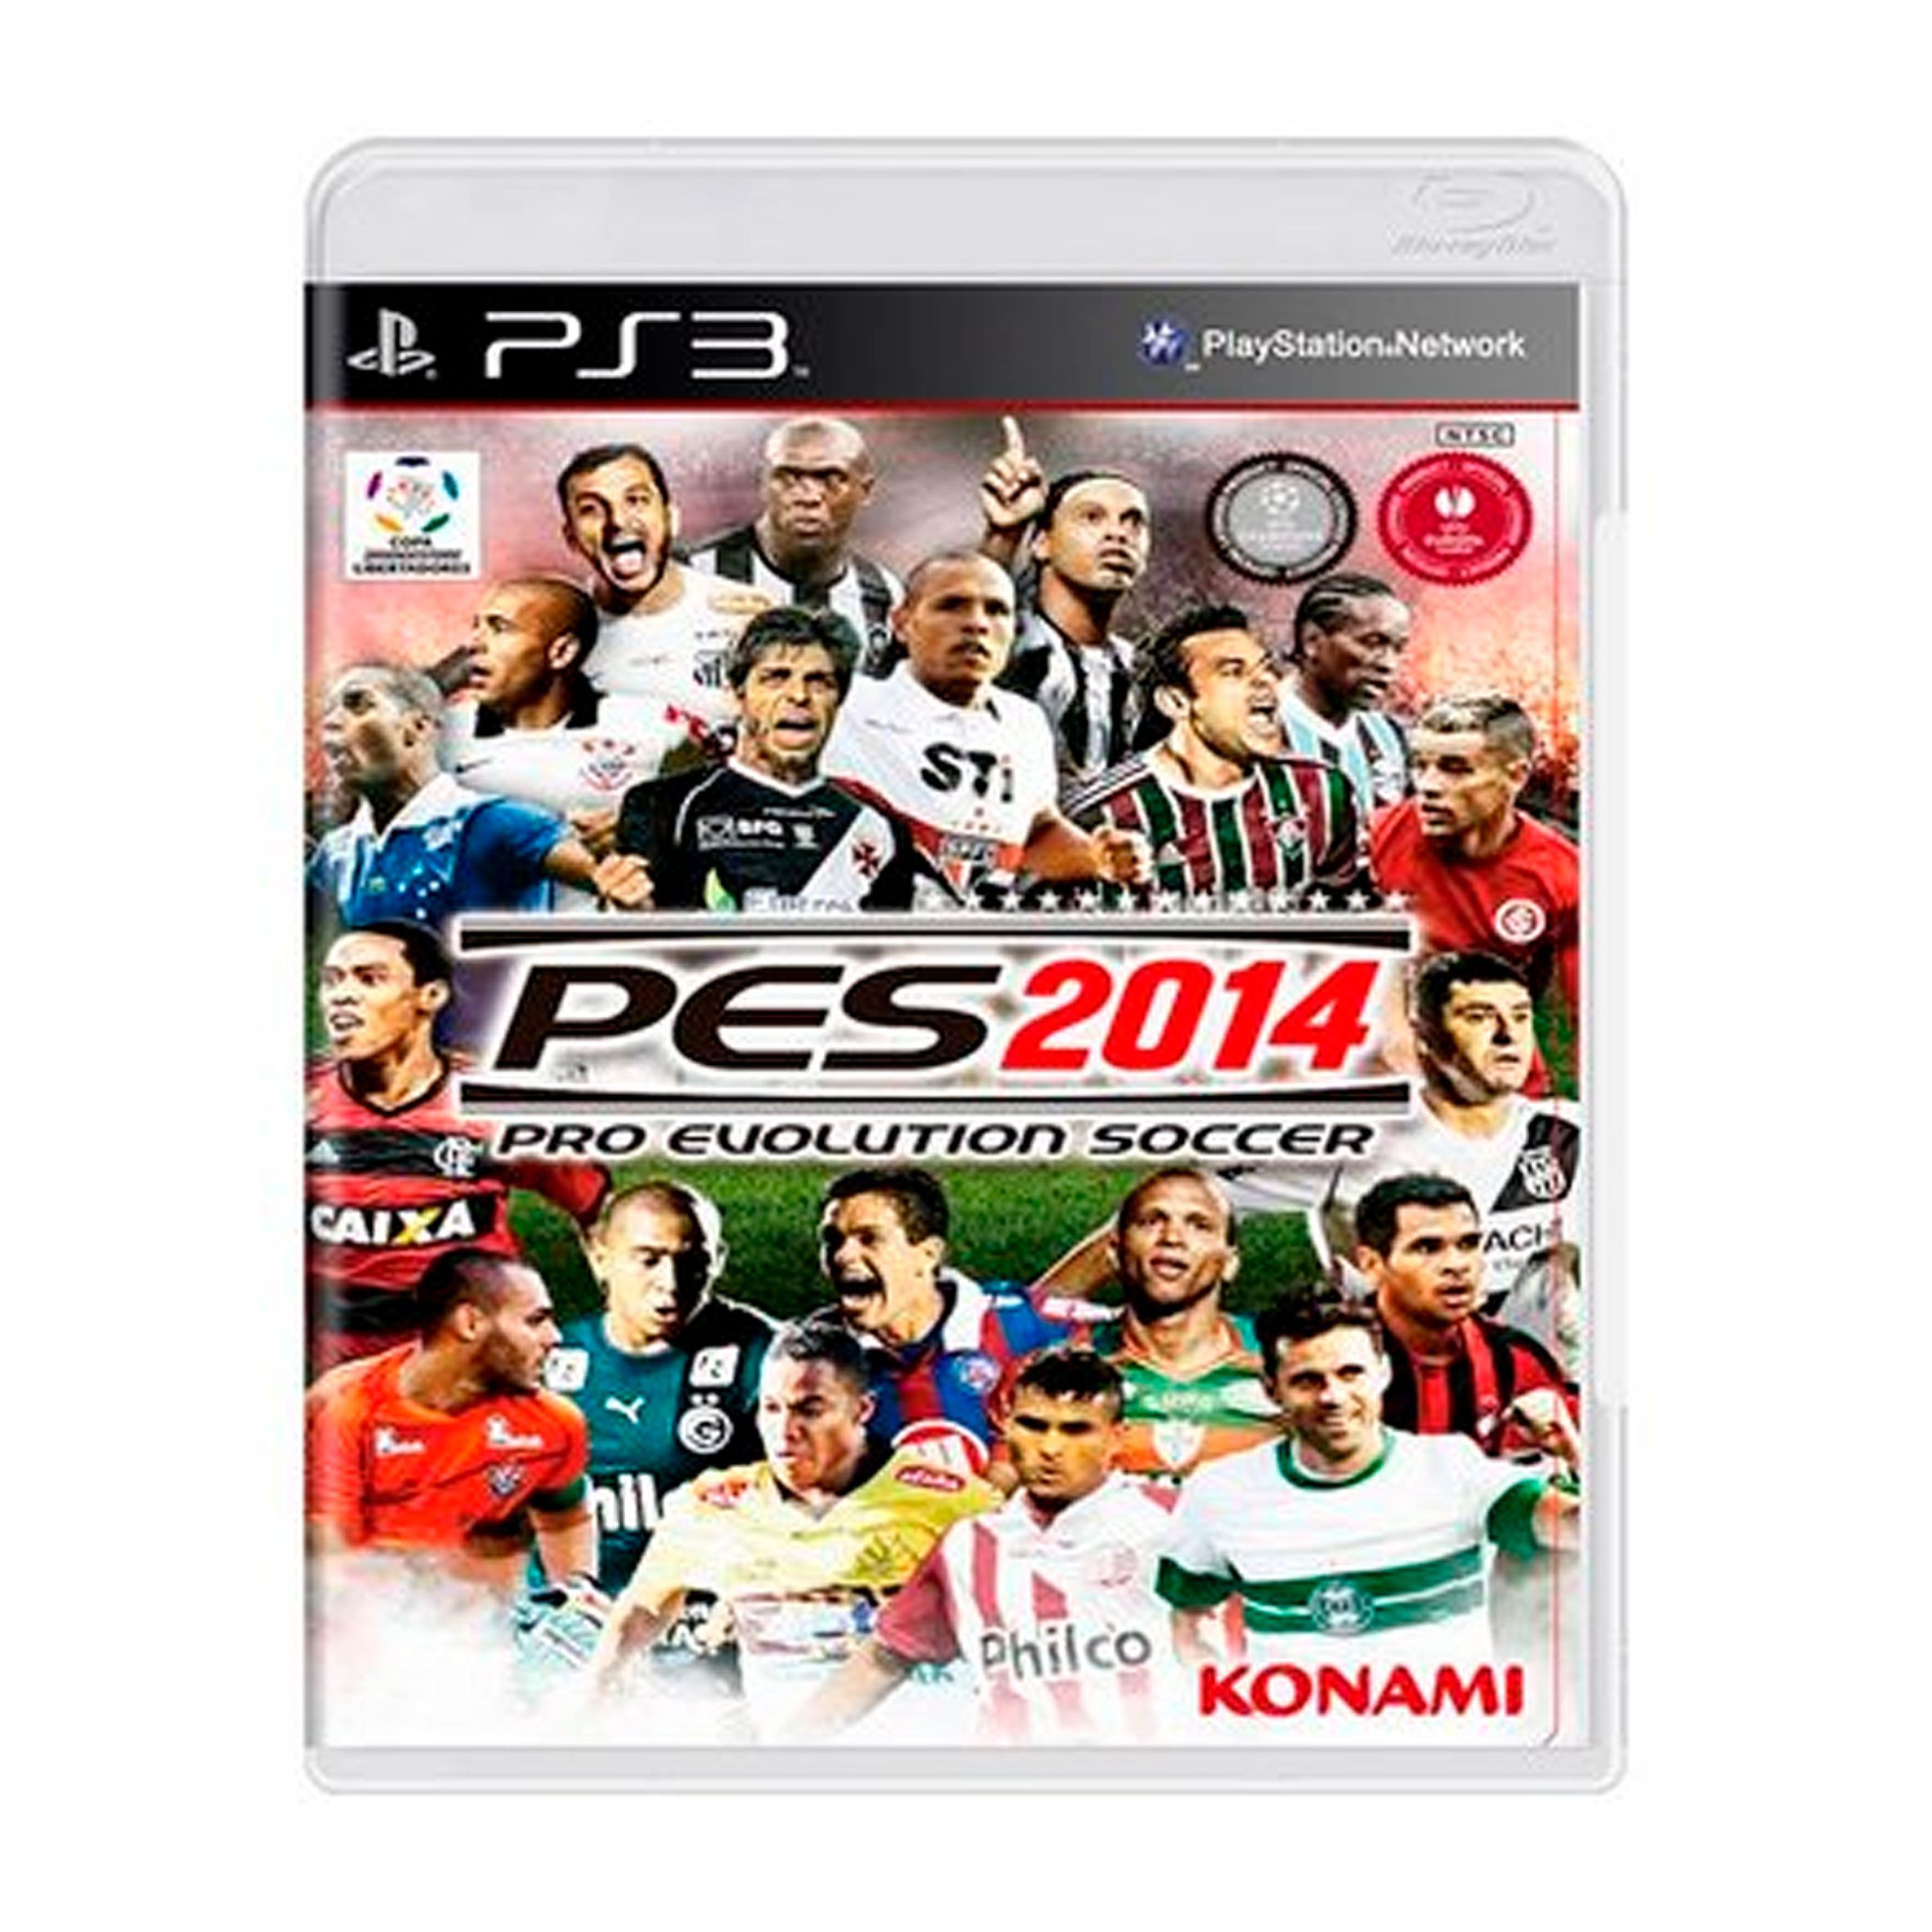 Konami divulga o primeiro trailer de PES 2014 e apela para emoção